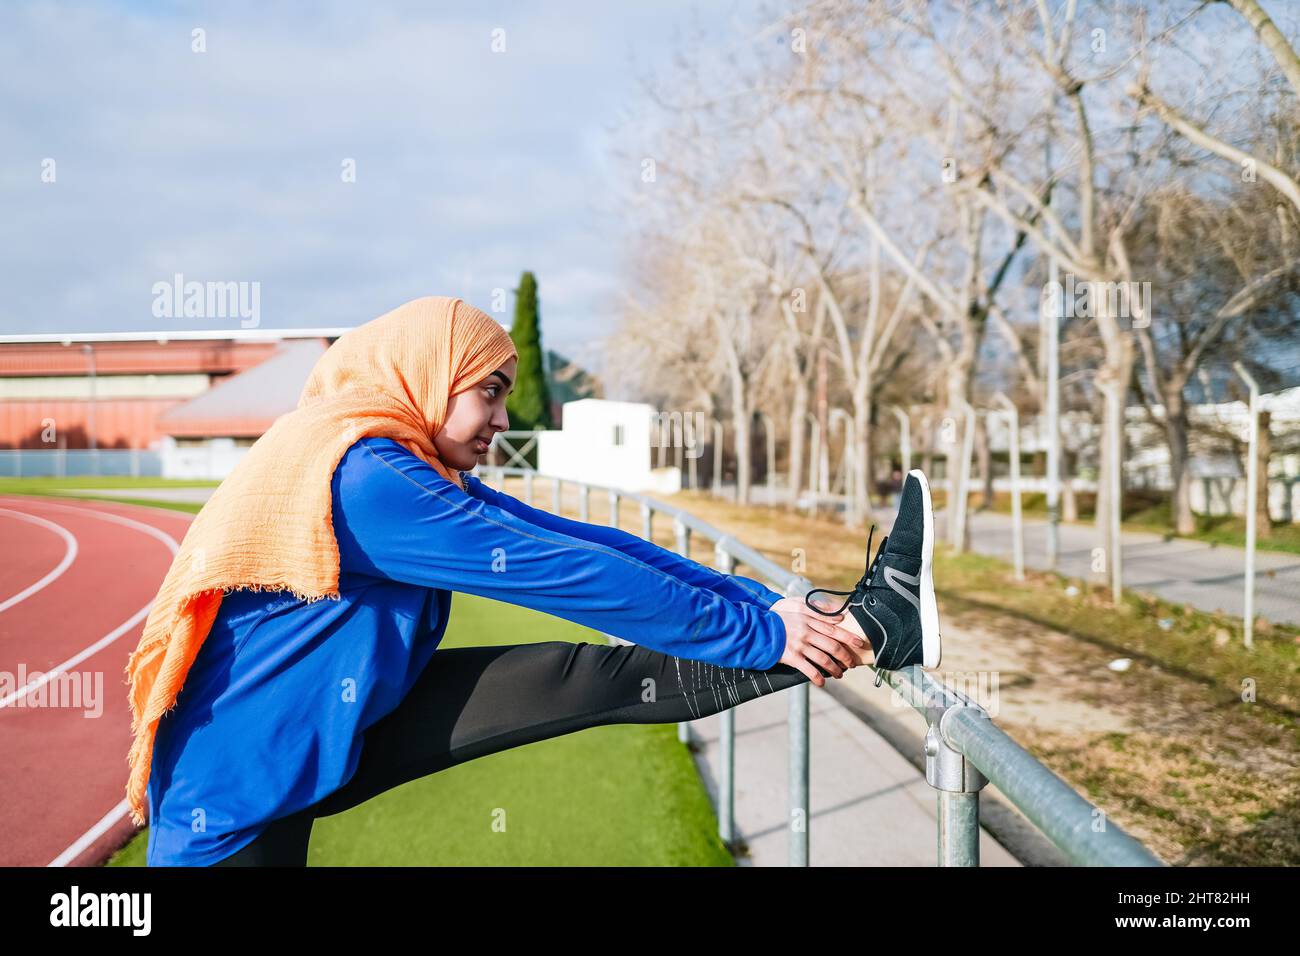 Muslimische ethnische Frau macht während des Trainings eine Dehnung der Oberschenkelmuskulatur Stockfoto